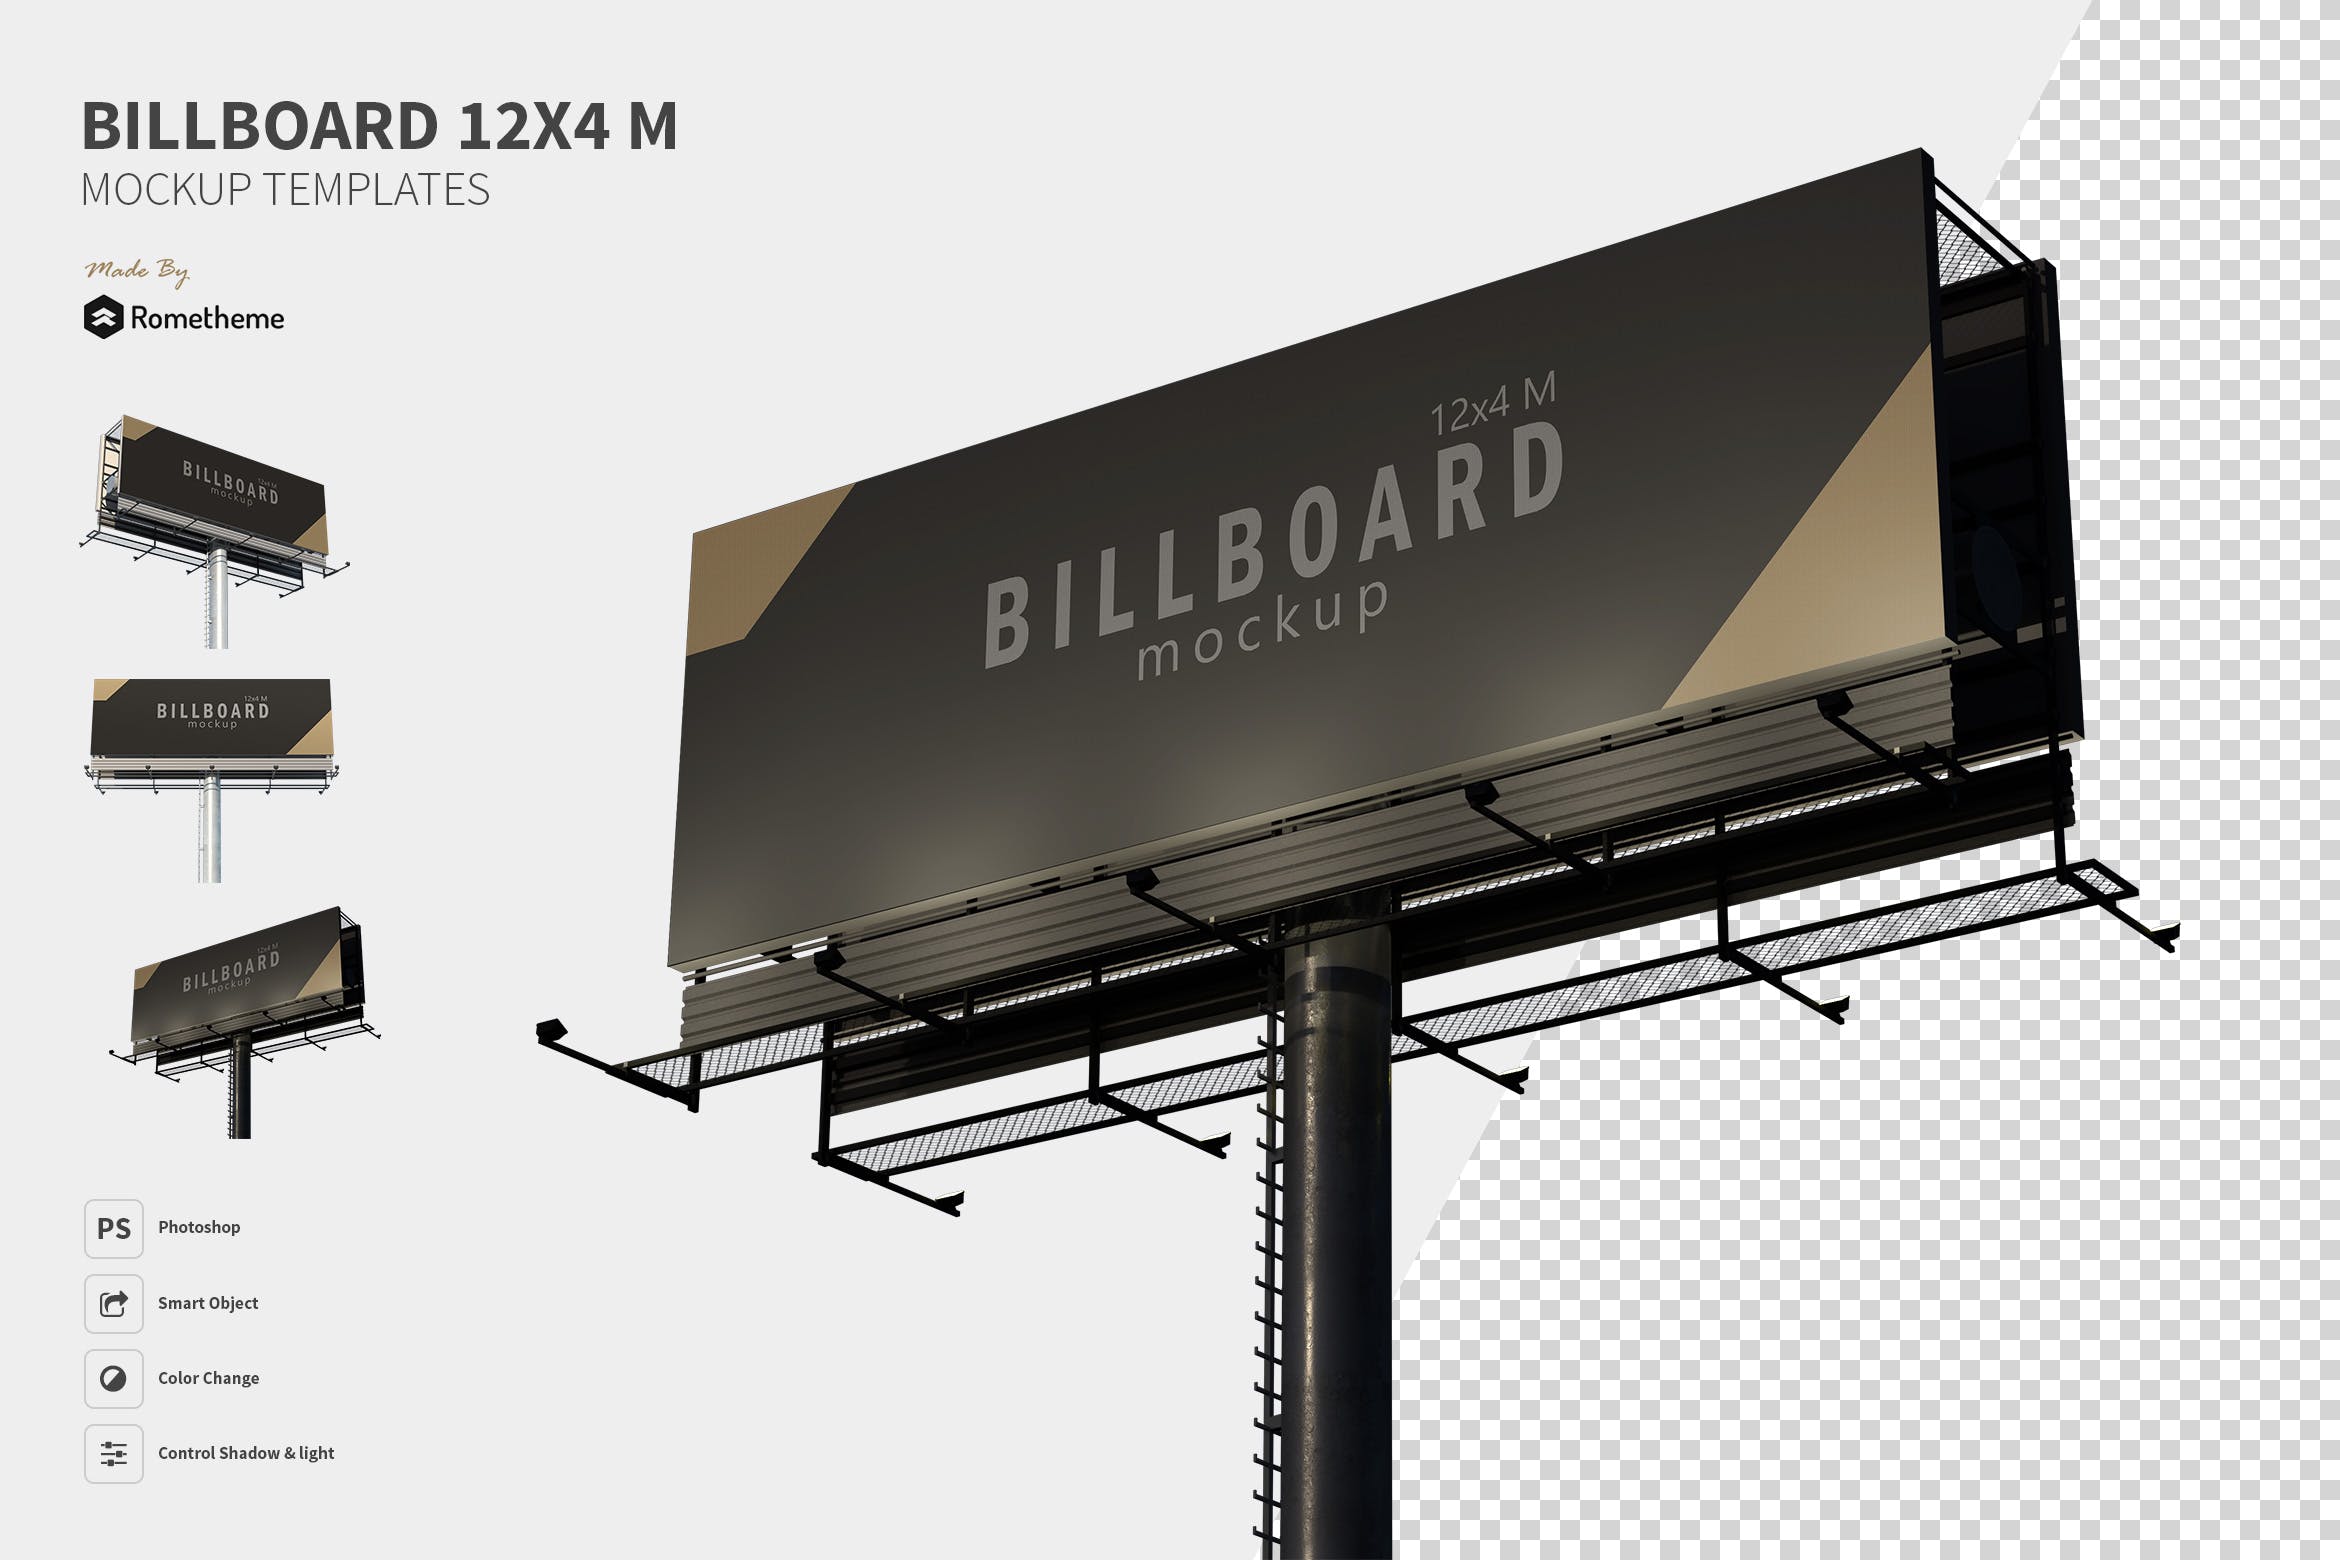 大型高速公路广告牌效果图样机第一素材精选 Billboard – Mockup FH插图